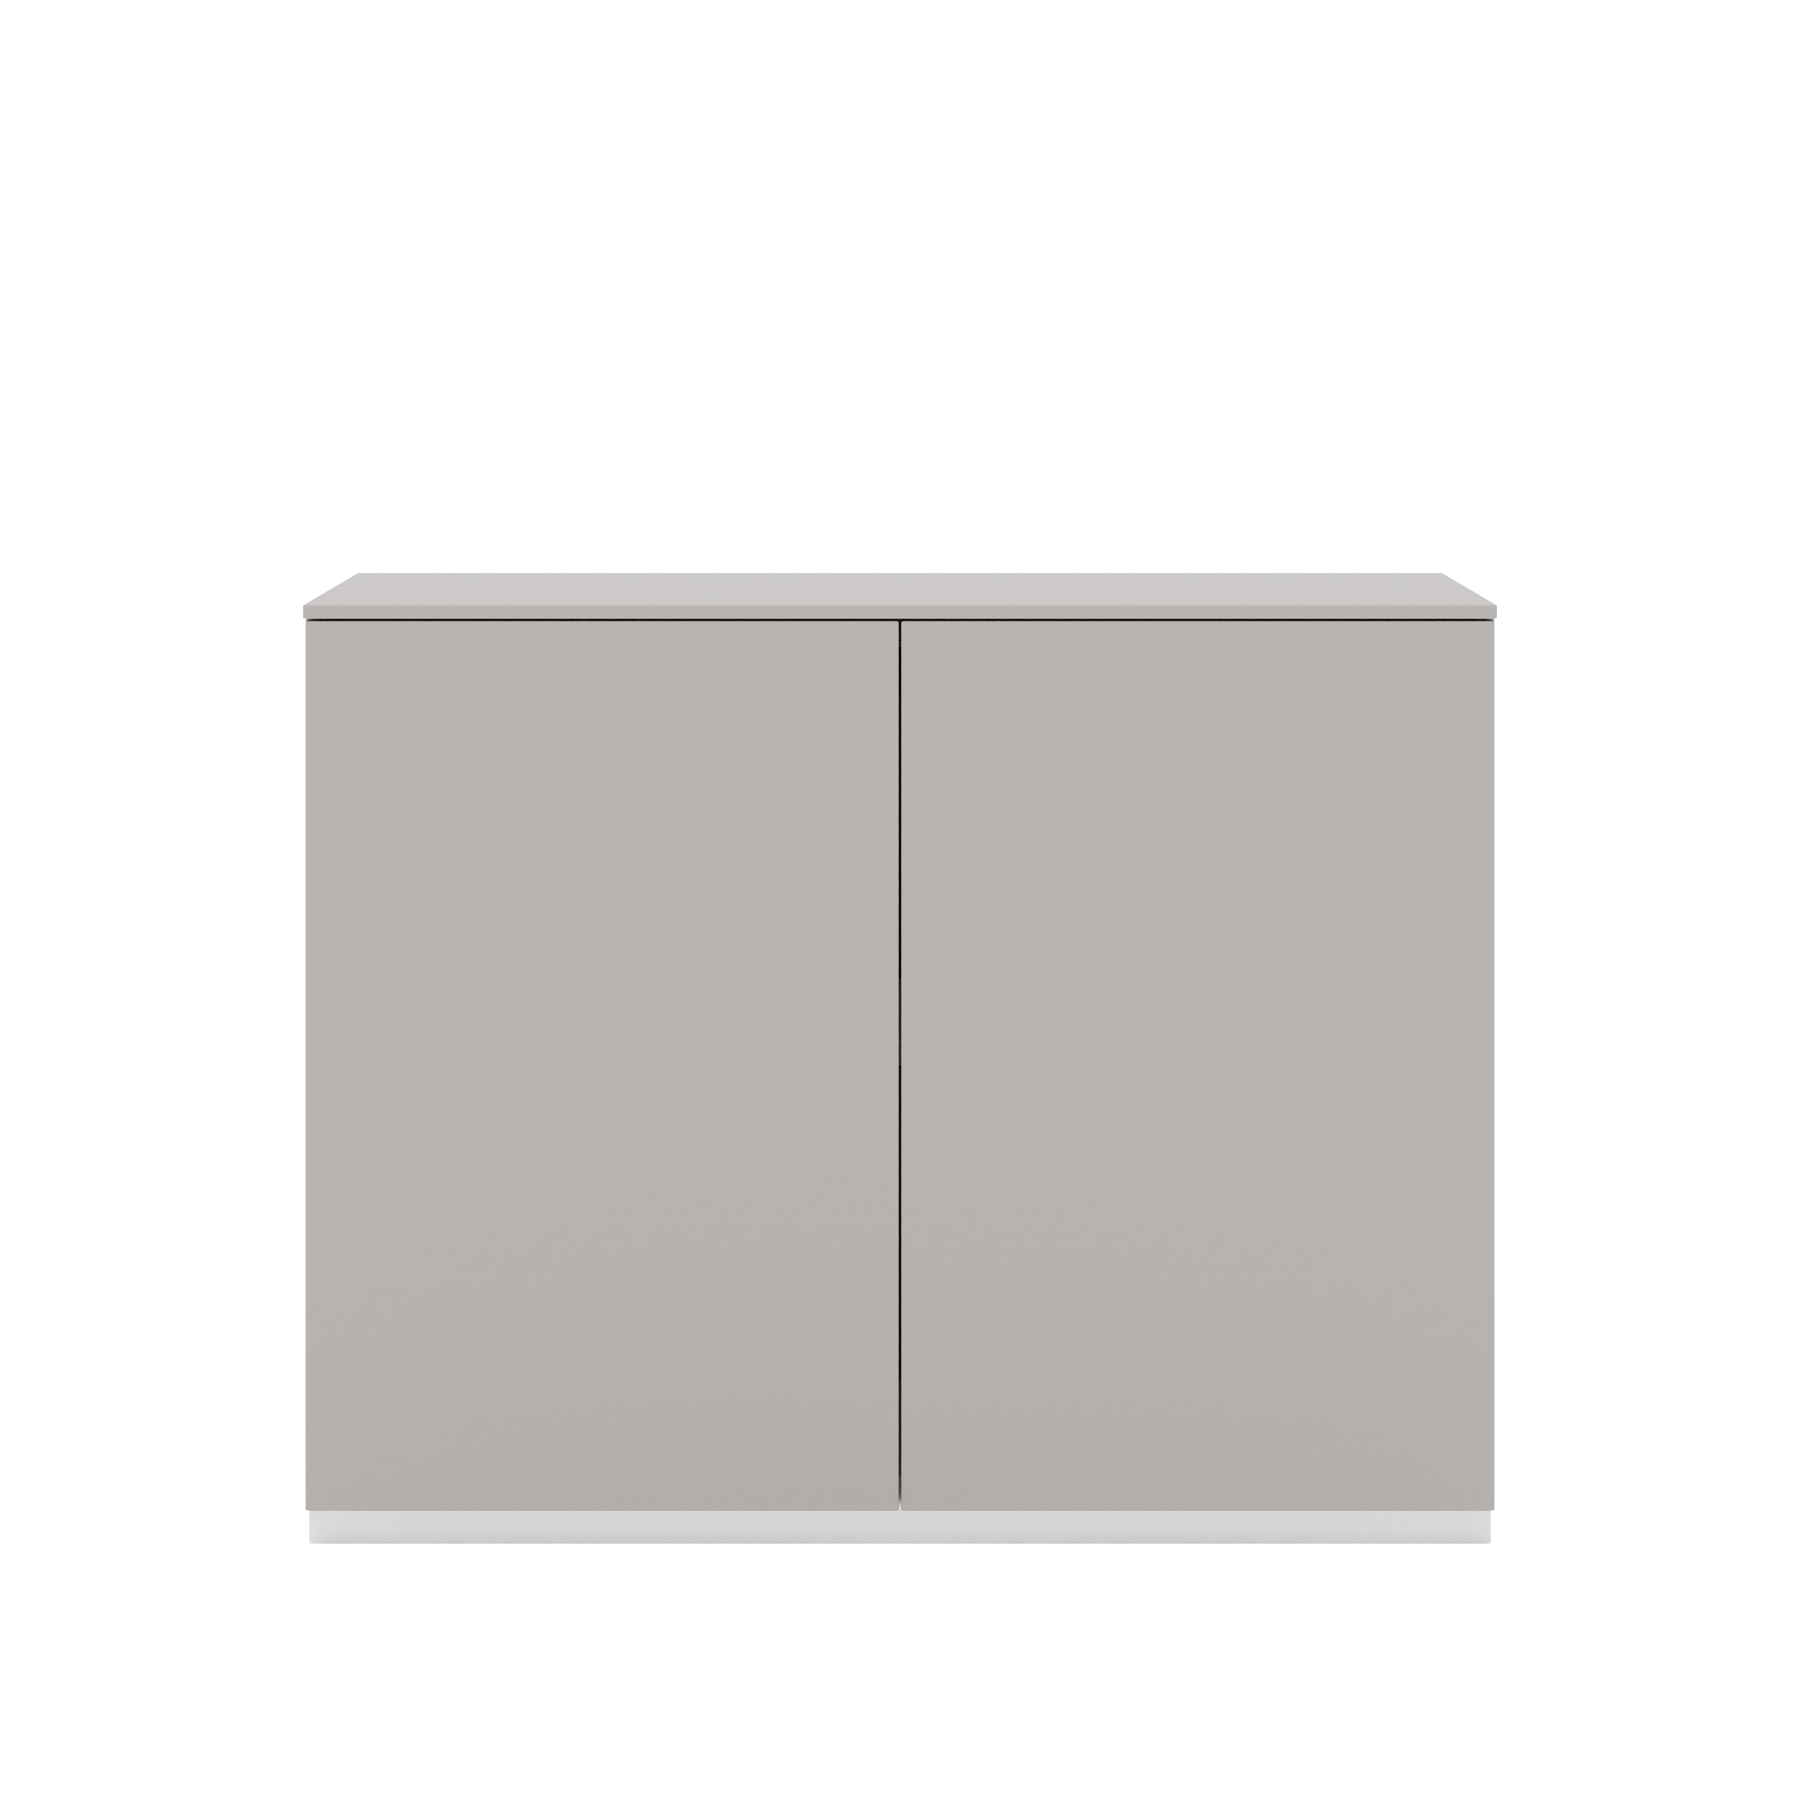 Vor weißem Hintergrund sieht man ein kiesgraues Sideboard mit zwei Drehtüren. Die Türen haben keine Griffe und sind mit einem Push-to-open-Mechanismus ausgestattet. Auf dem Schrank befindet sich eine kiesgraue Abdeckplatte.